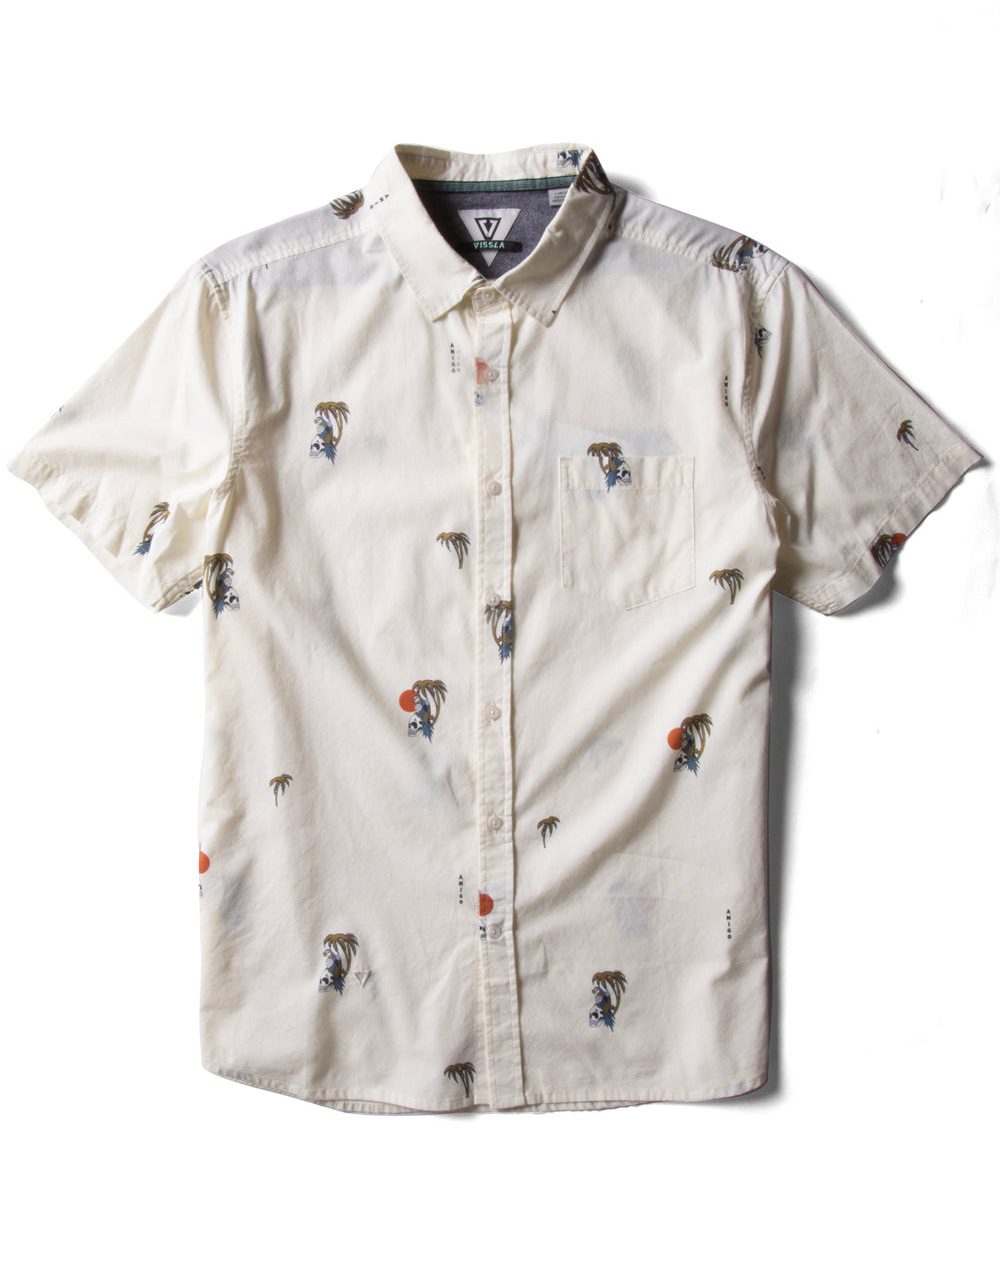 VISSLA Parrodise Eco Boys Button Up Shirt